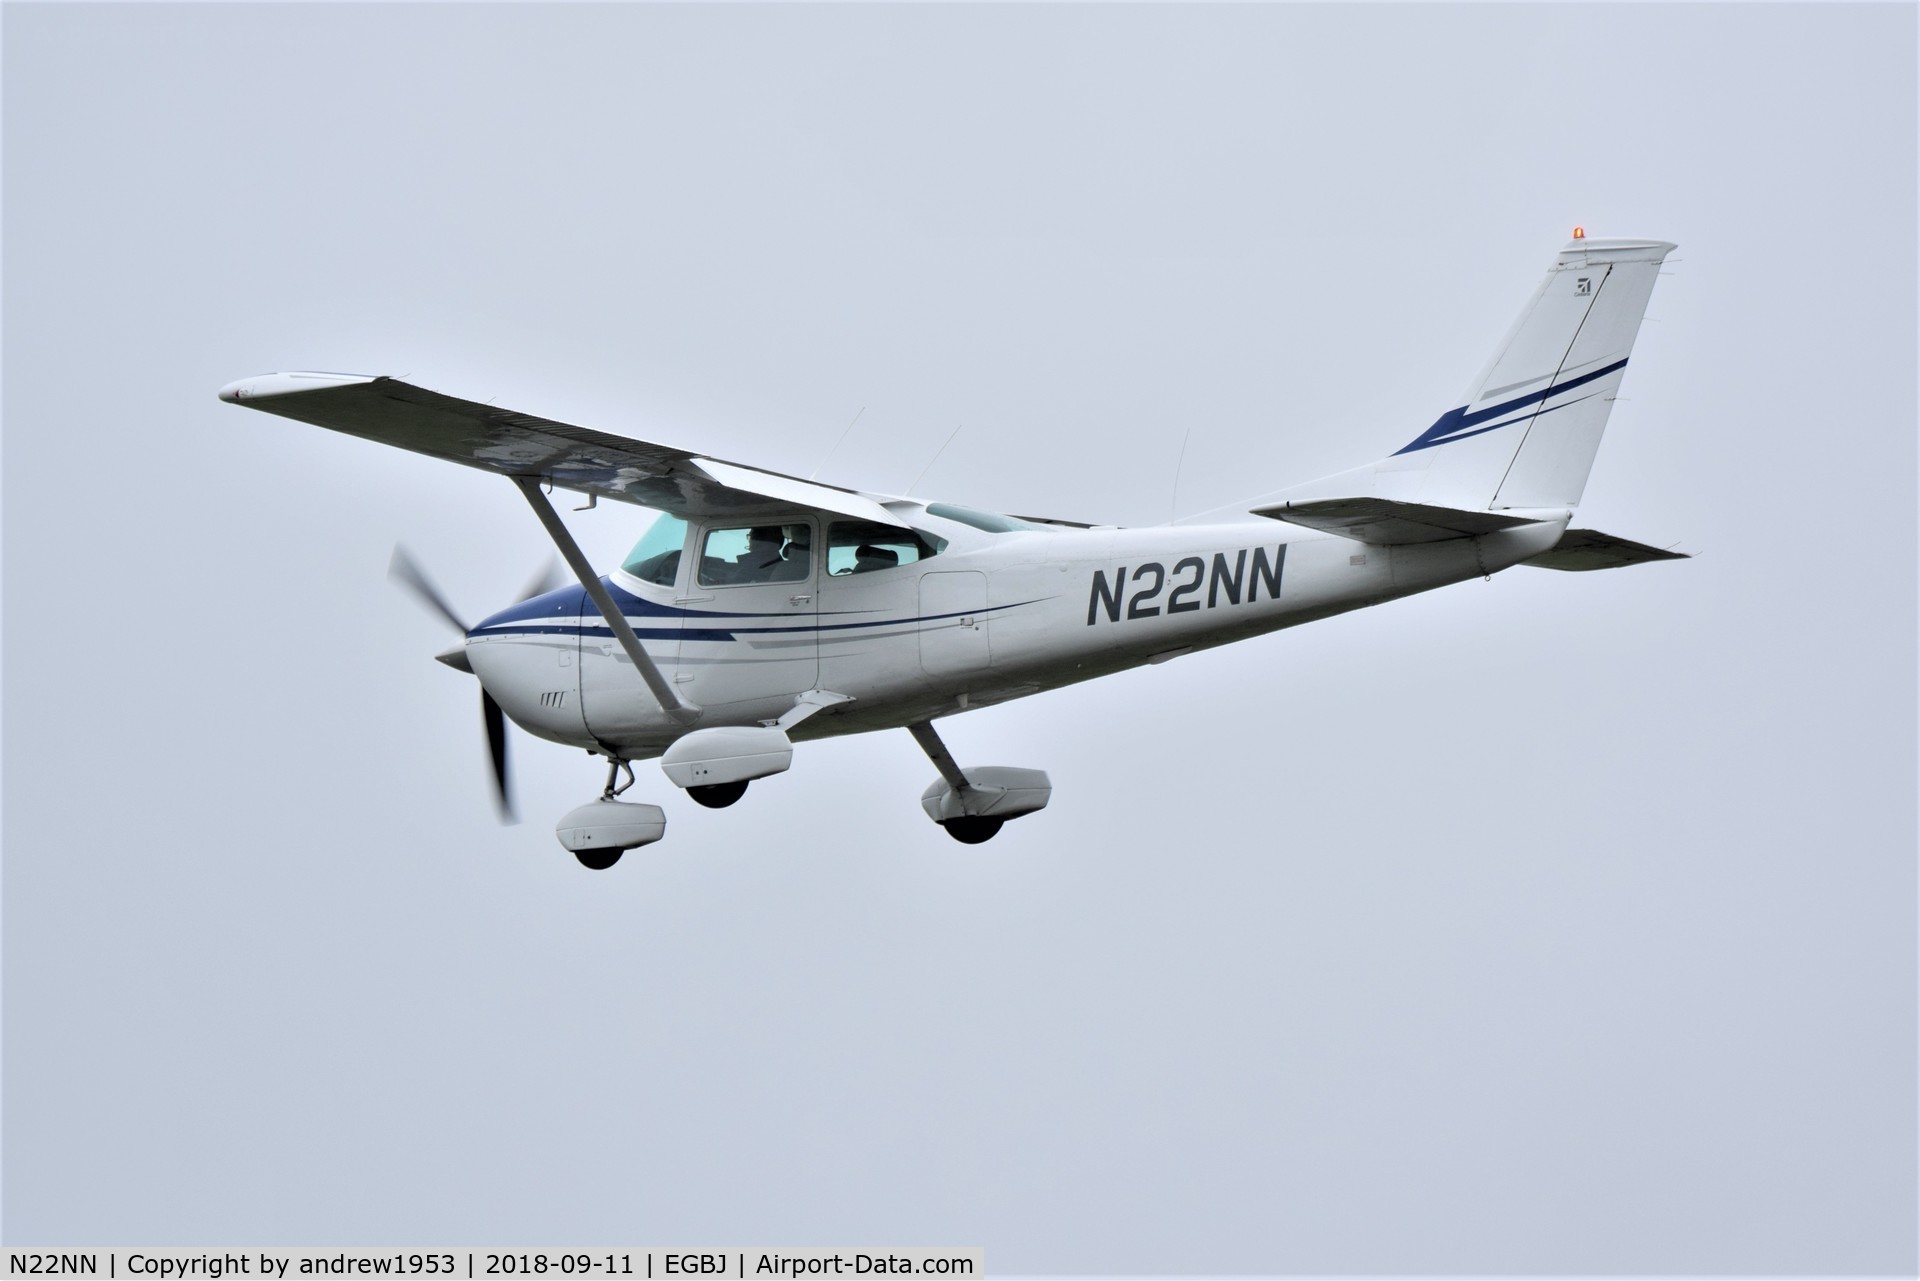 N22NN, 1975 Cessna 182P Skylane C/N 18263497, N22NN at Gloucestershire Airport.